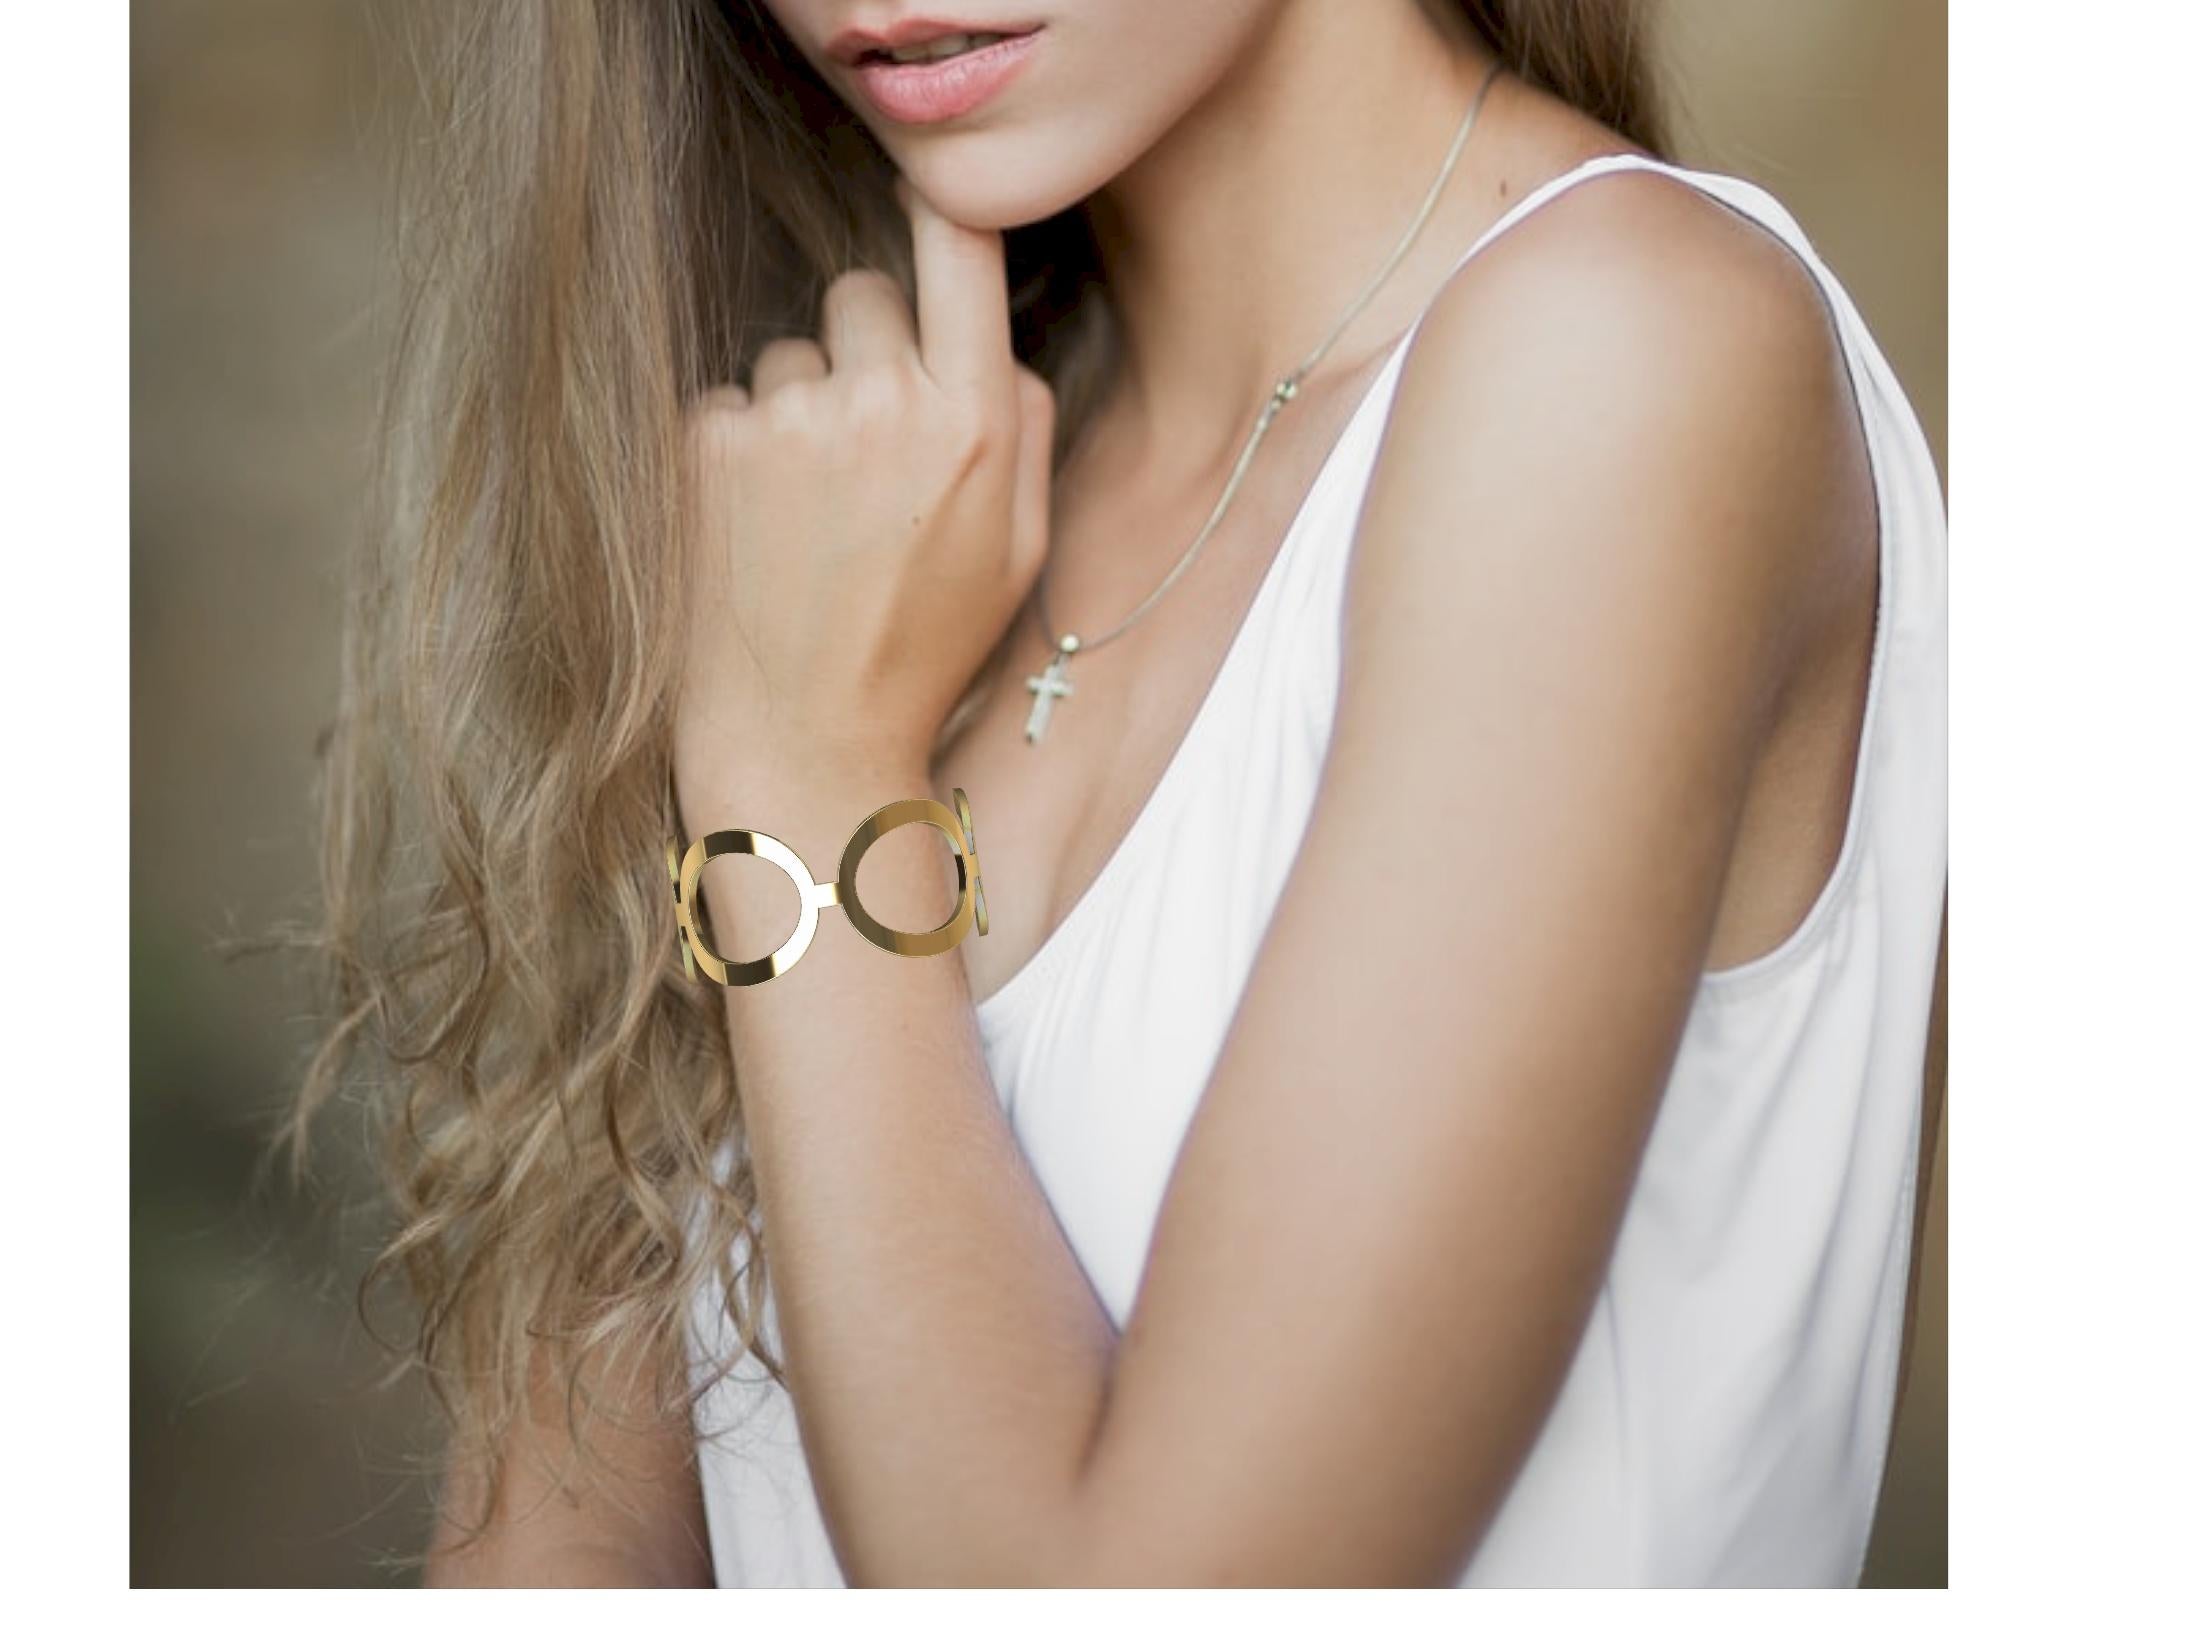 Le designer de Tiffany, Thomas Kurilla, a créé cette 5  Bracelet manchette ovale en or jaune karat, 4 x 2 mm d'épaisseur x 29 mm de largeur. J'ai conçu et fabriqué cette manchette en argent pour Tiffany & Co. J'utilisais des formes ovales simples